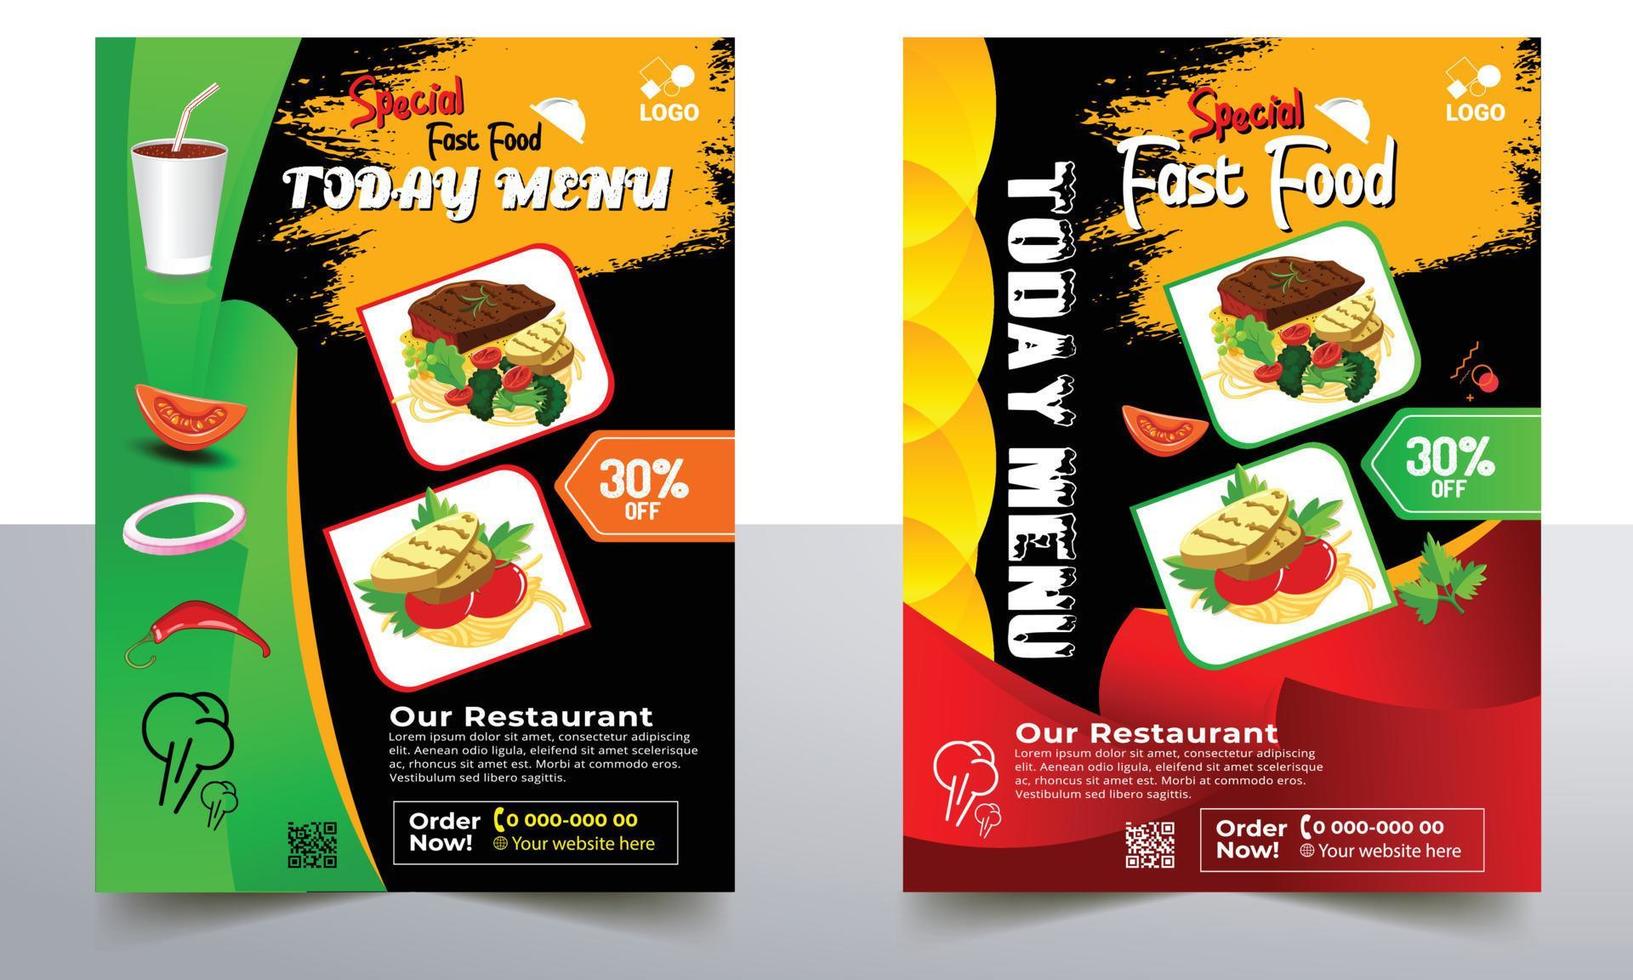 Restaurant köstliches Fast-Food-Flyer-Design. Das heutige chinesische Menü-Cover, Burger-Fast-Food-Broschüre, Vektorvorlage für warme Speisen, Restaurant-Burger-Menü-Buch-Flyer. vektor